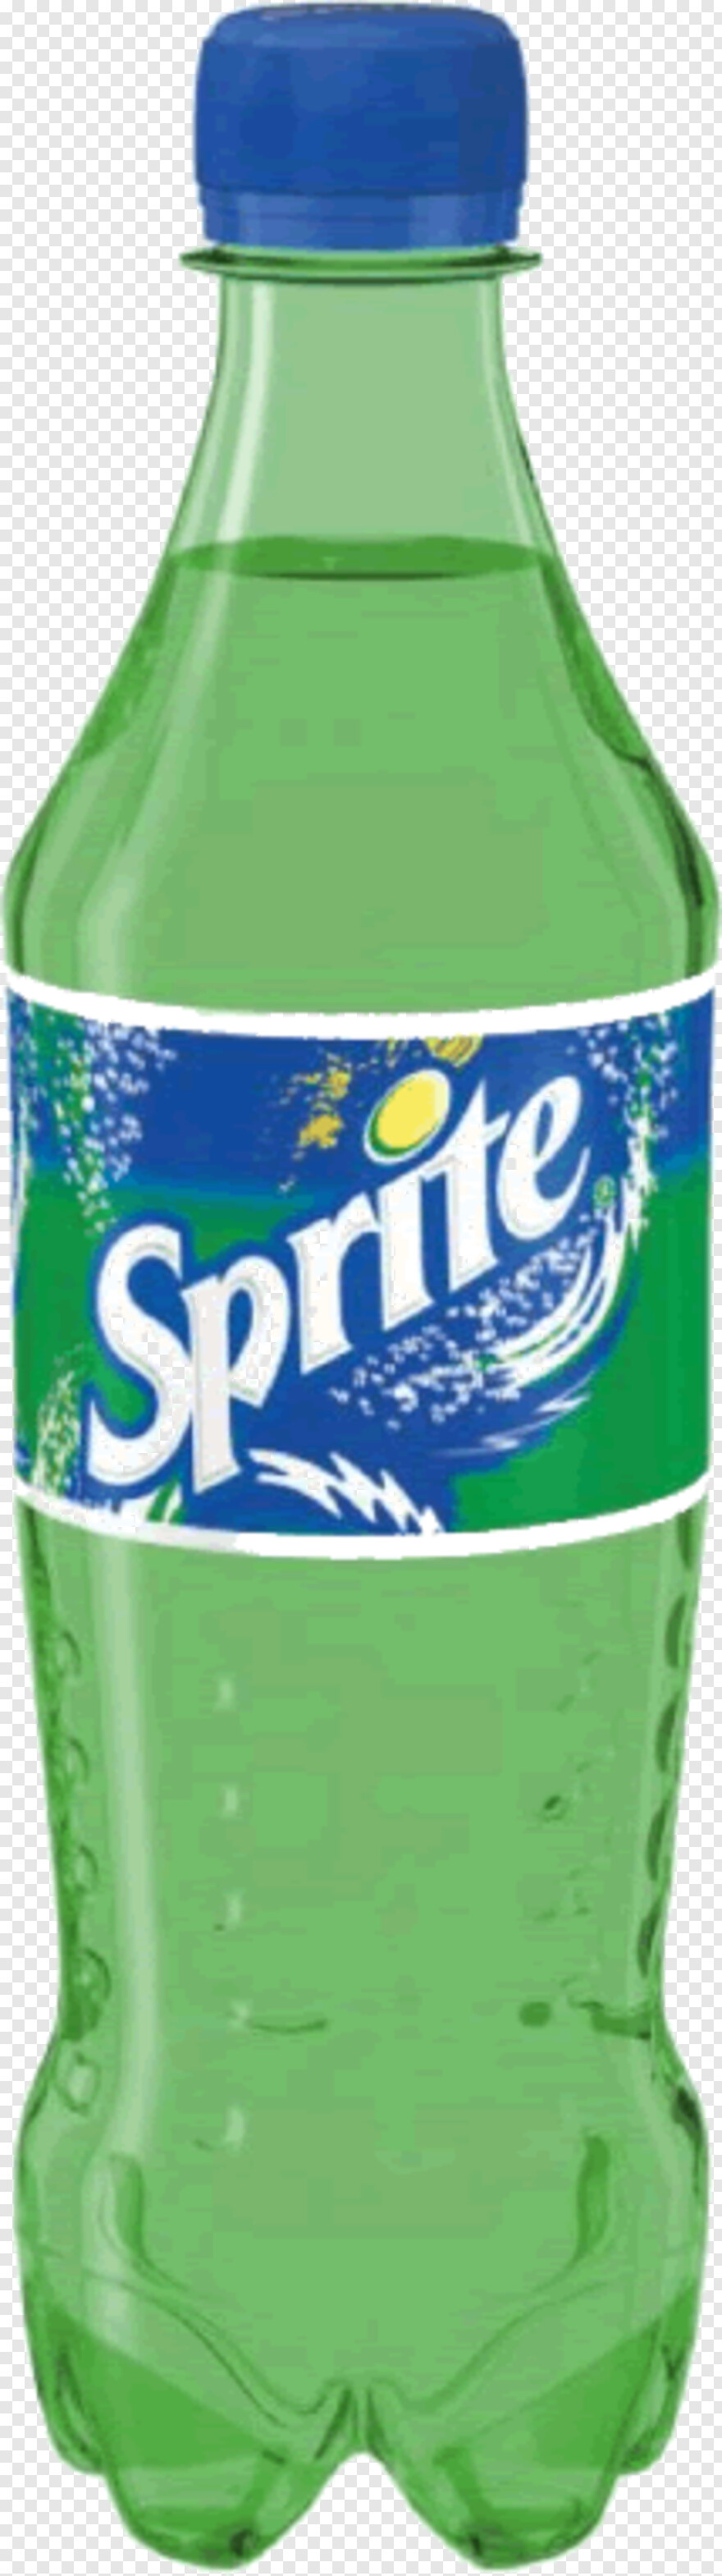 sprite-bottle # 326002